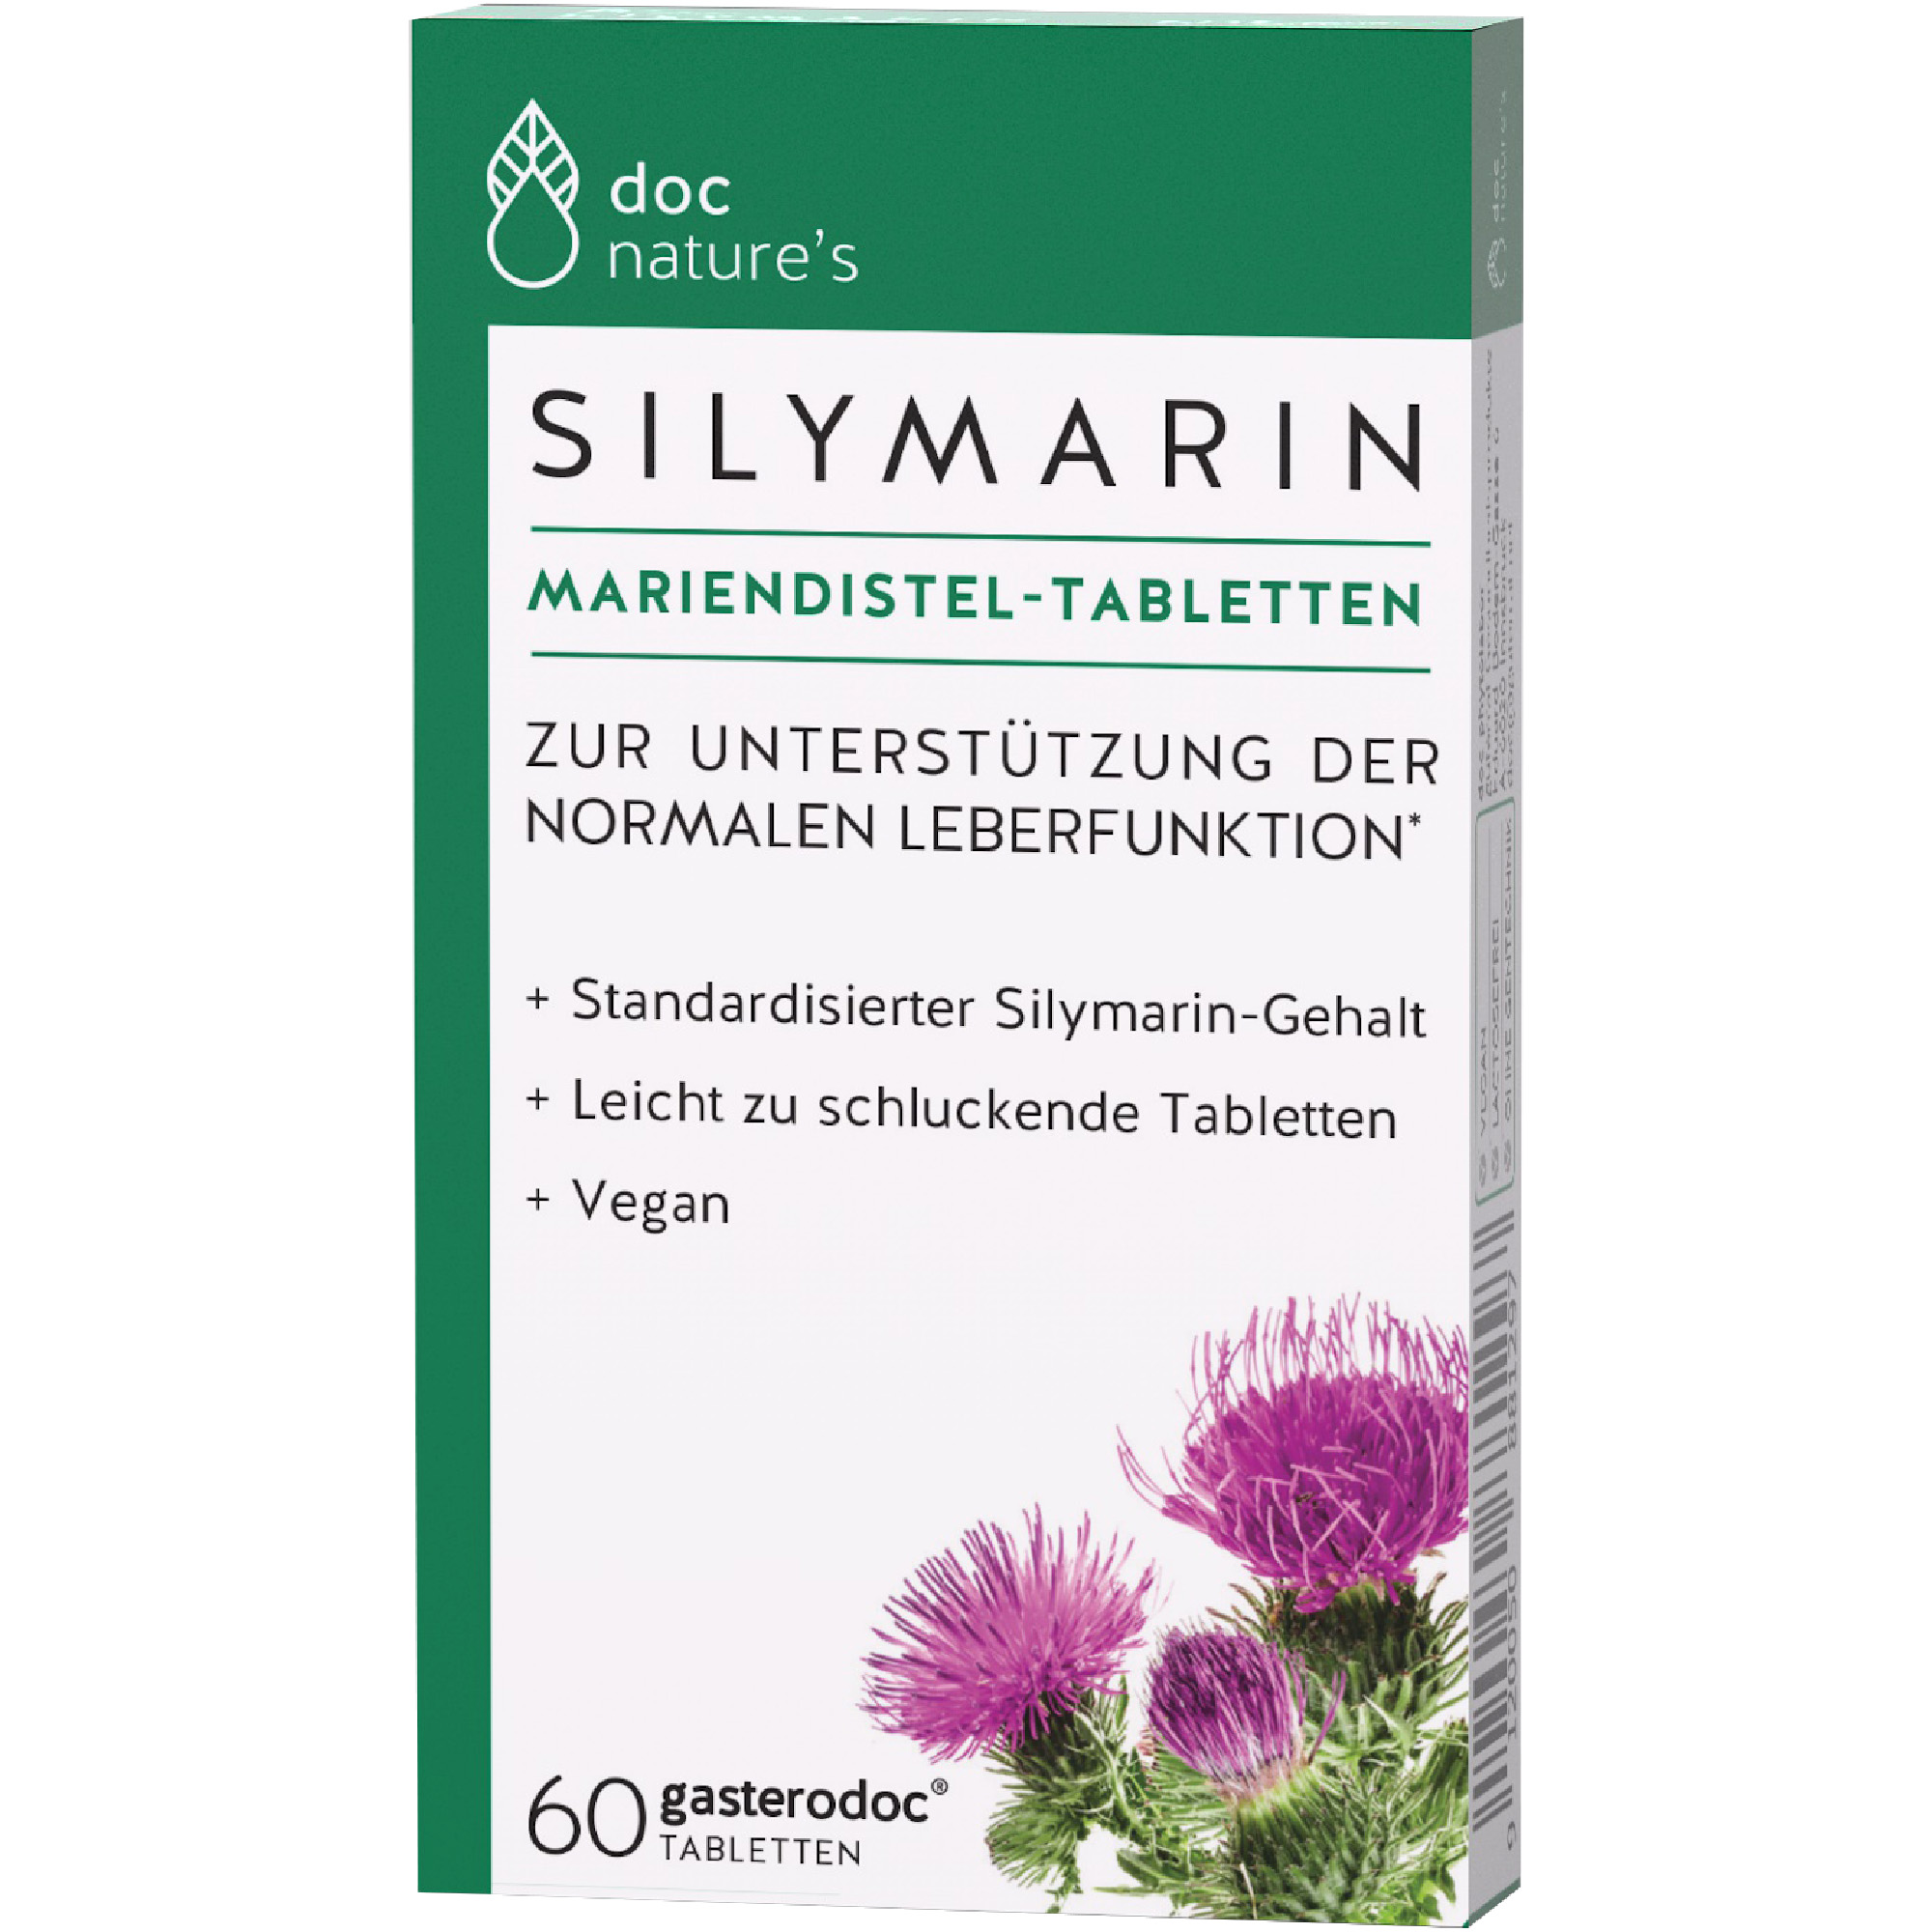 doc nature‘s SILYMARIN Mariendistel-Tabletten